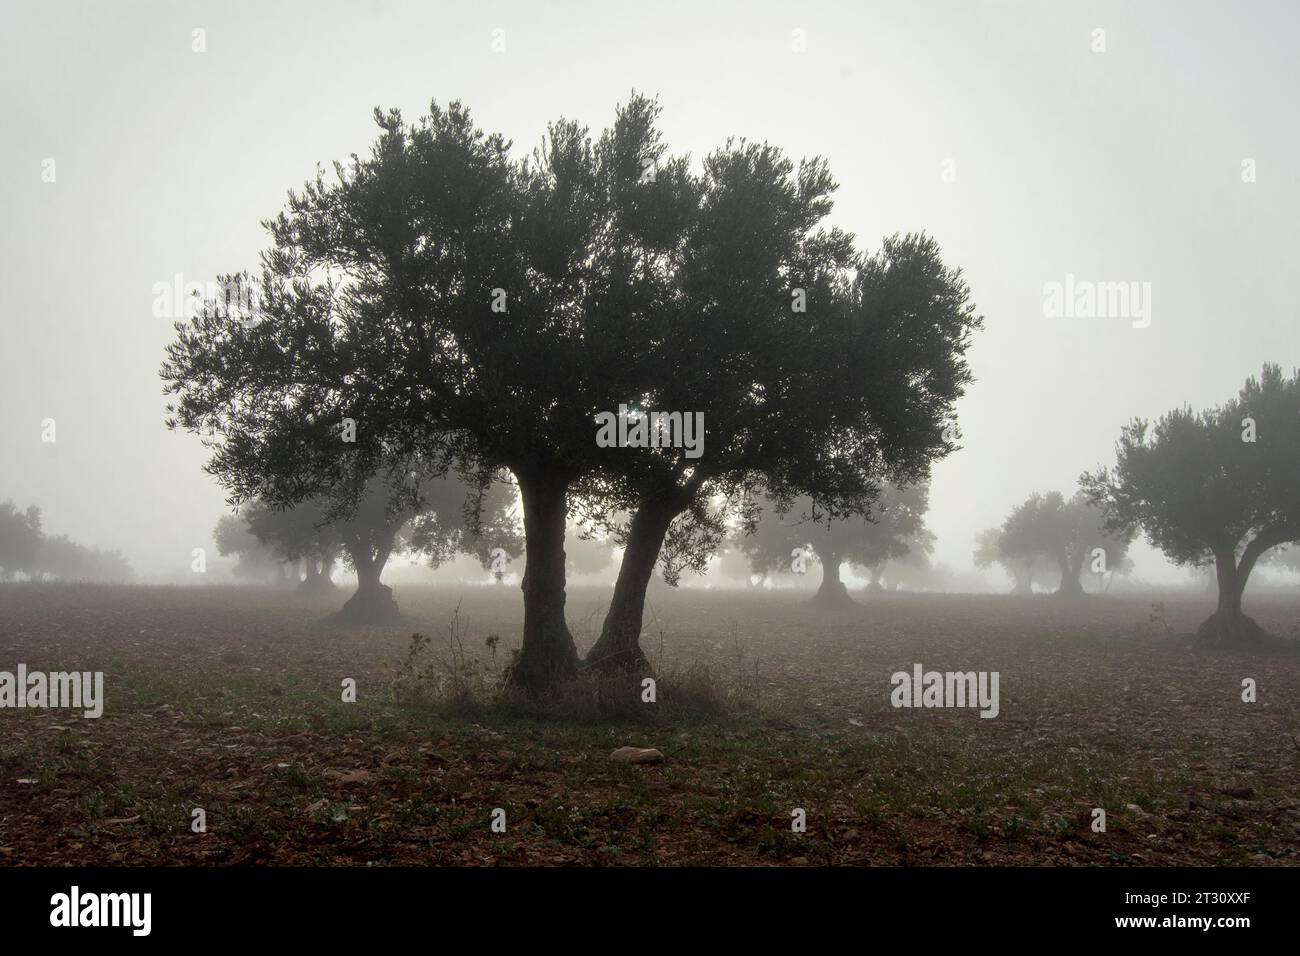 Amanecer con niebla en olivar español Stock Photo